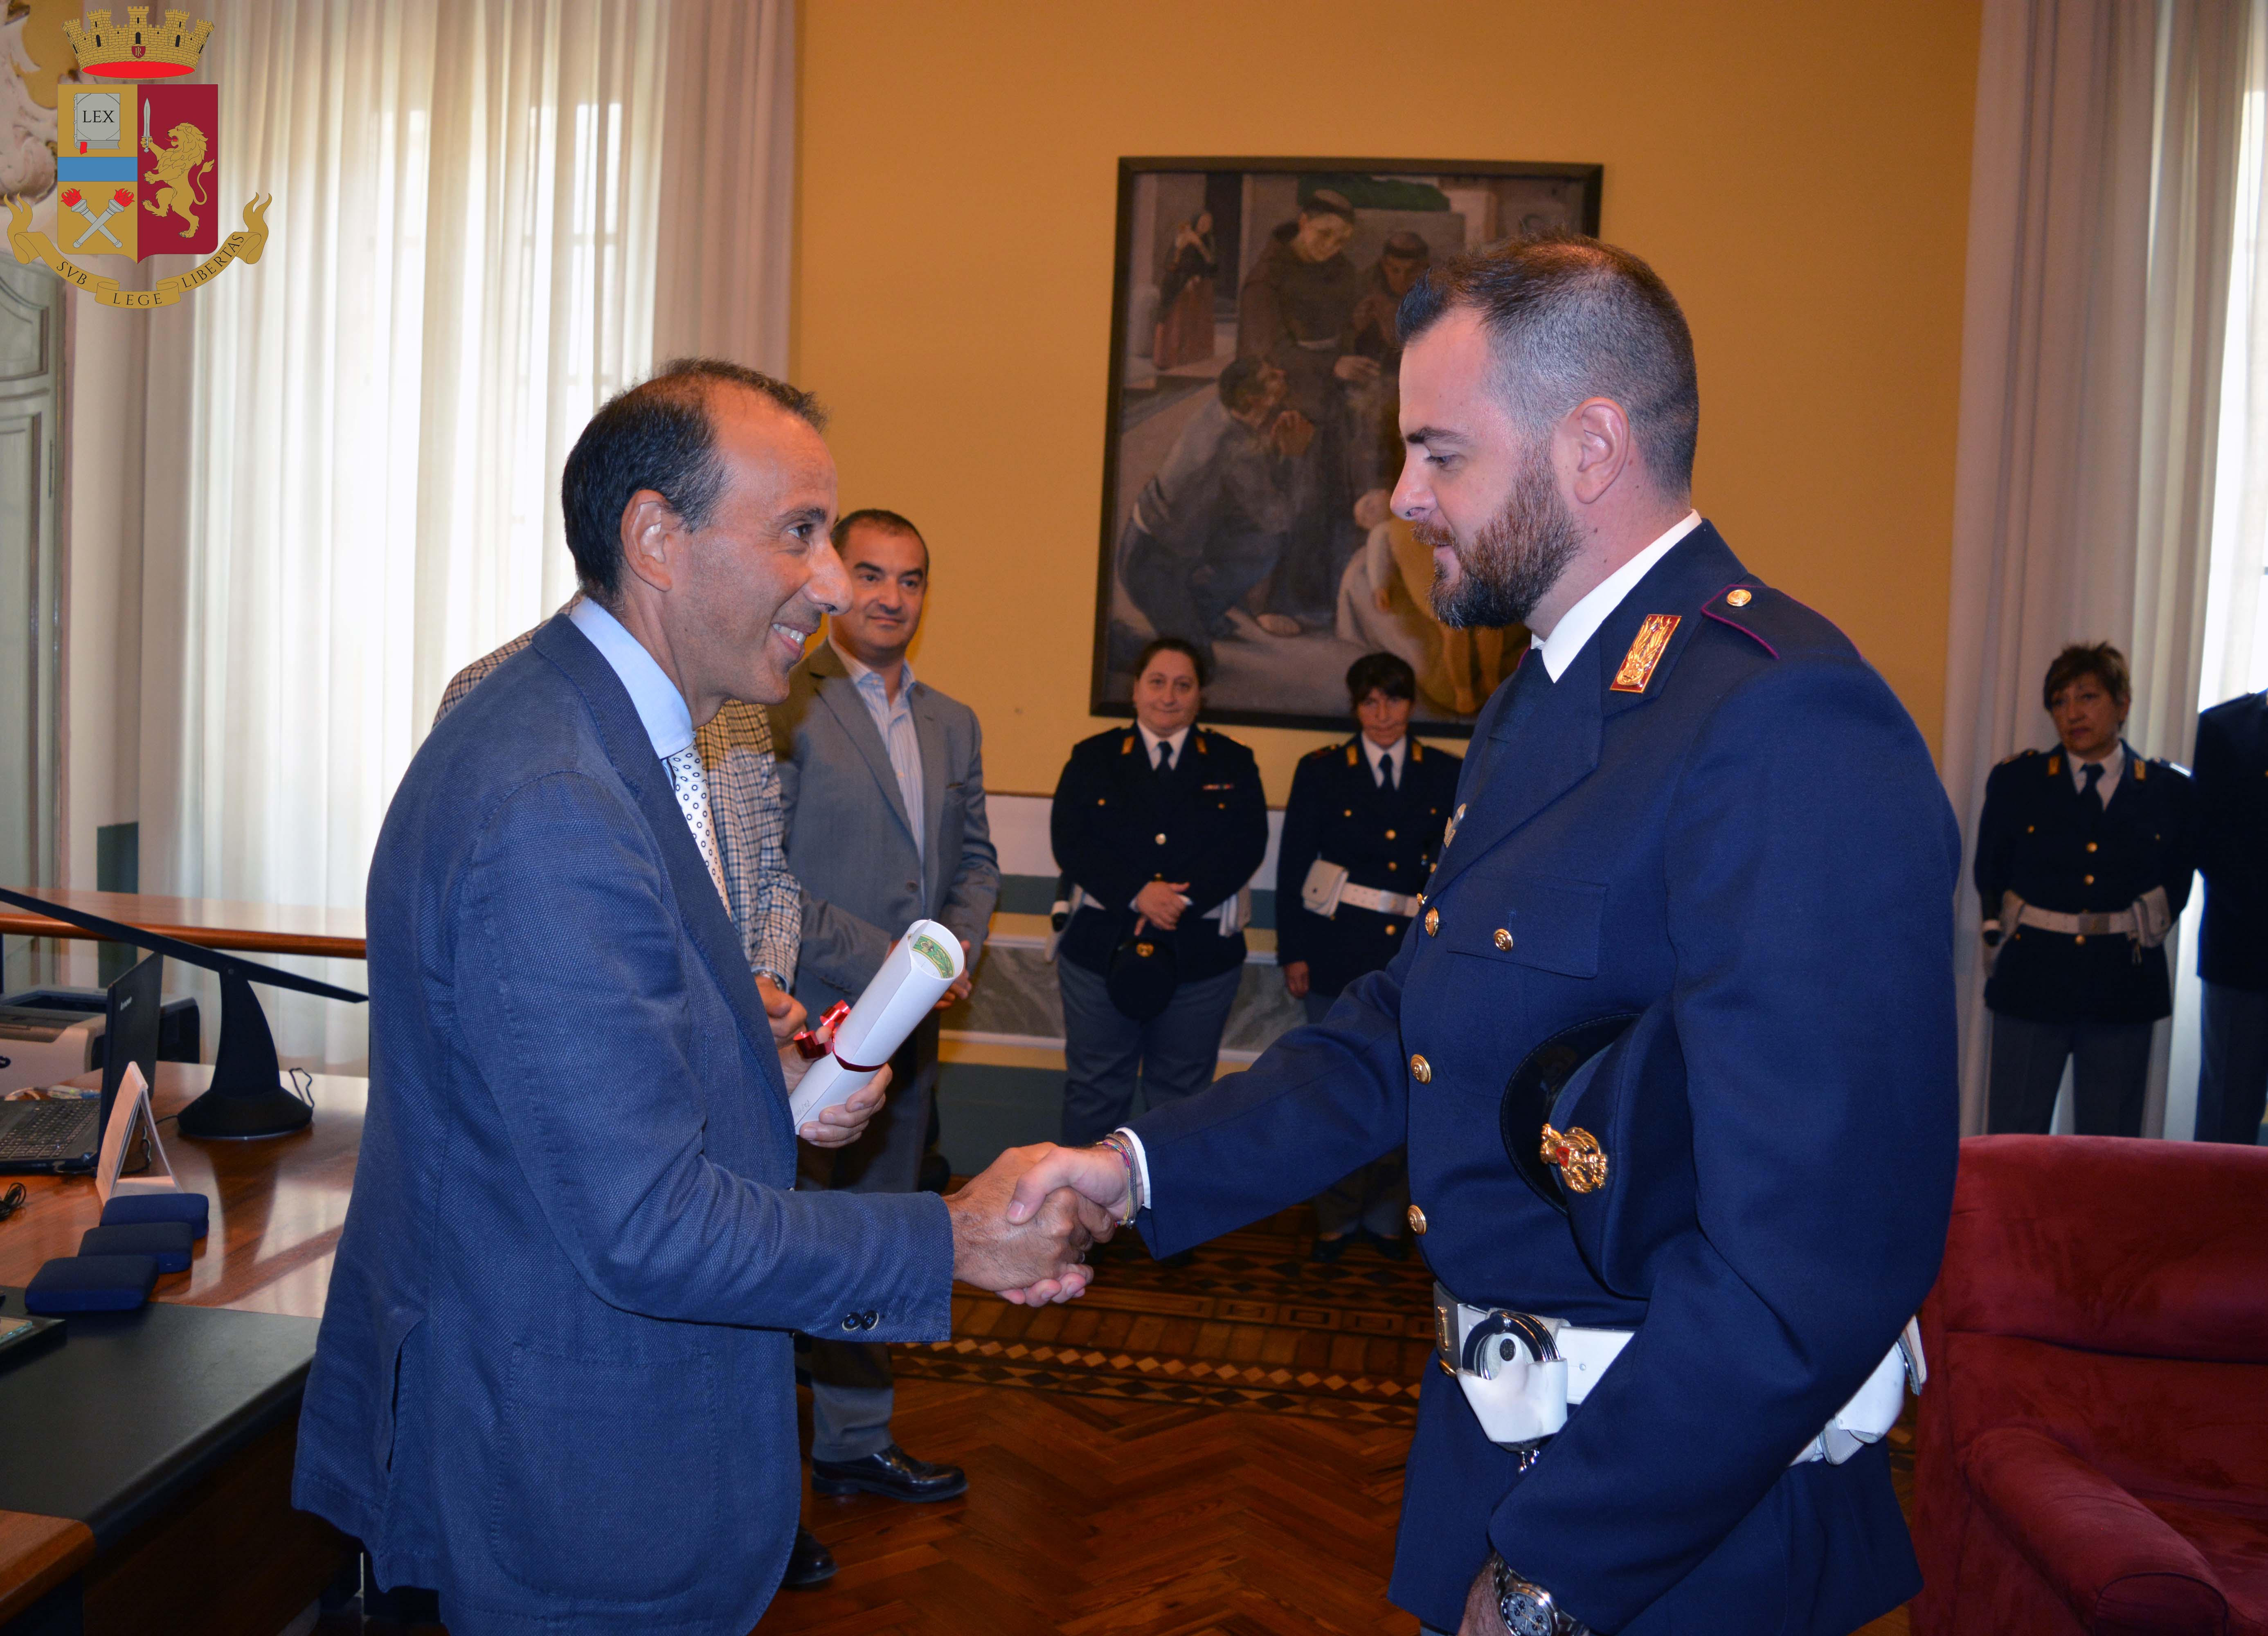 Questura di Cremona il Questore di Cremona Gaetano Bonaccorso saluta e ringrazia tutto il personale della Polizia di Stato della provincia di Cremona.